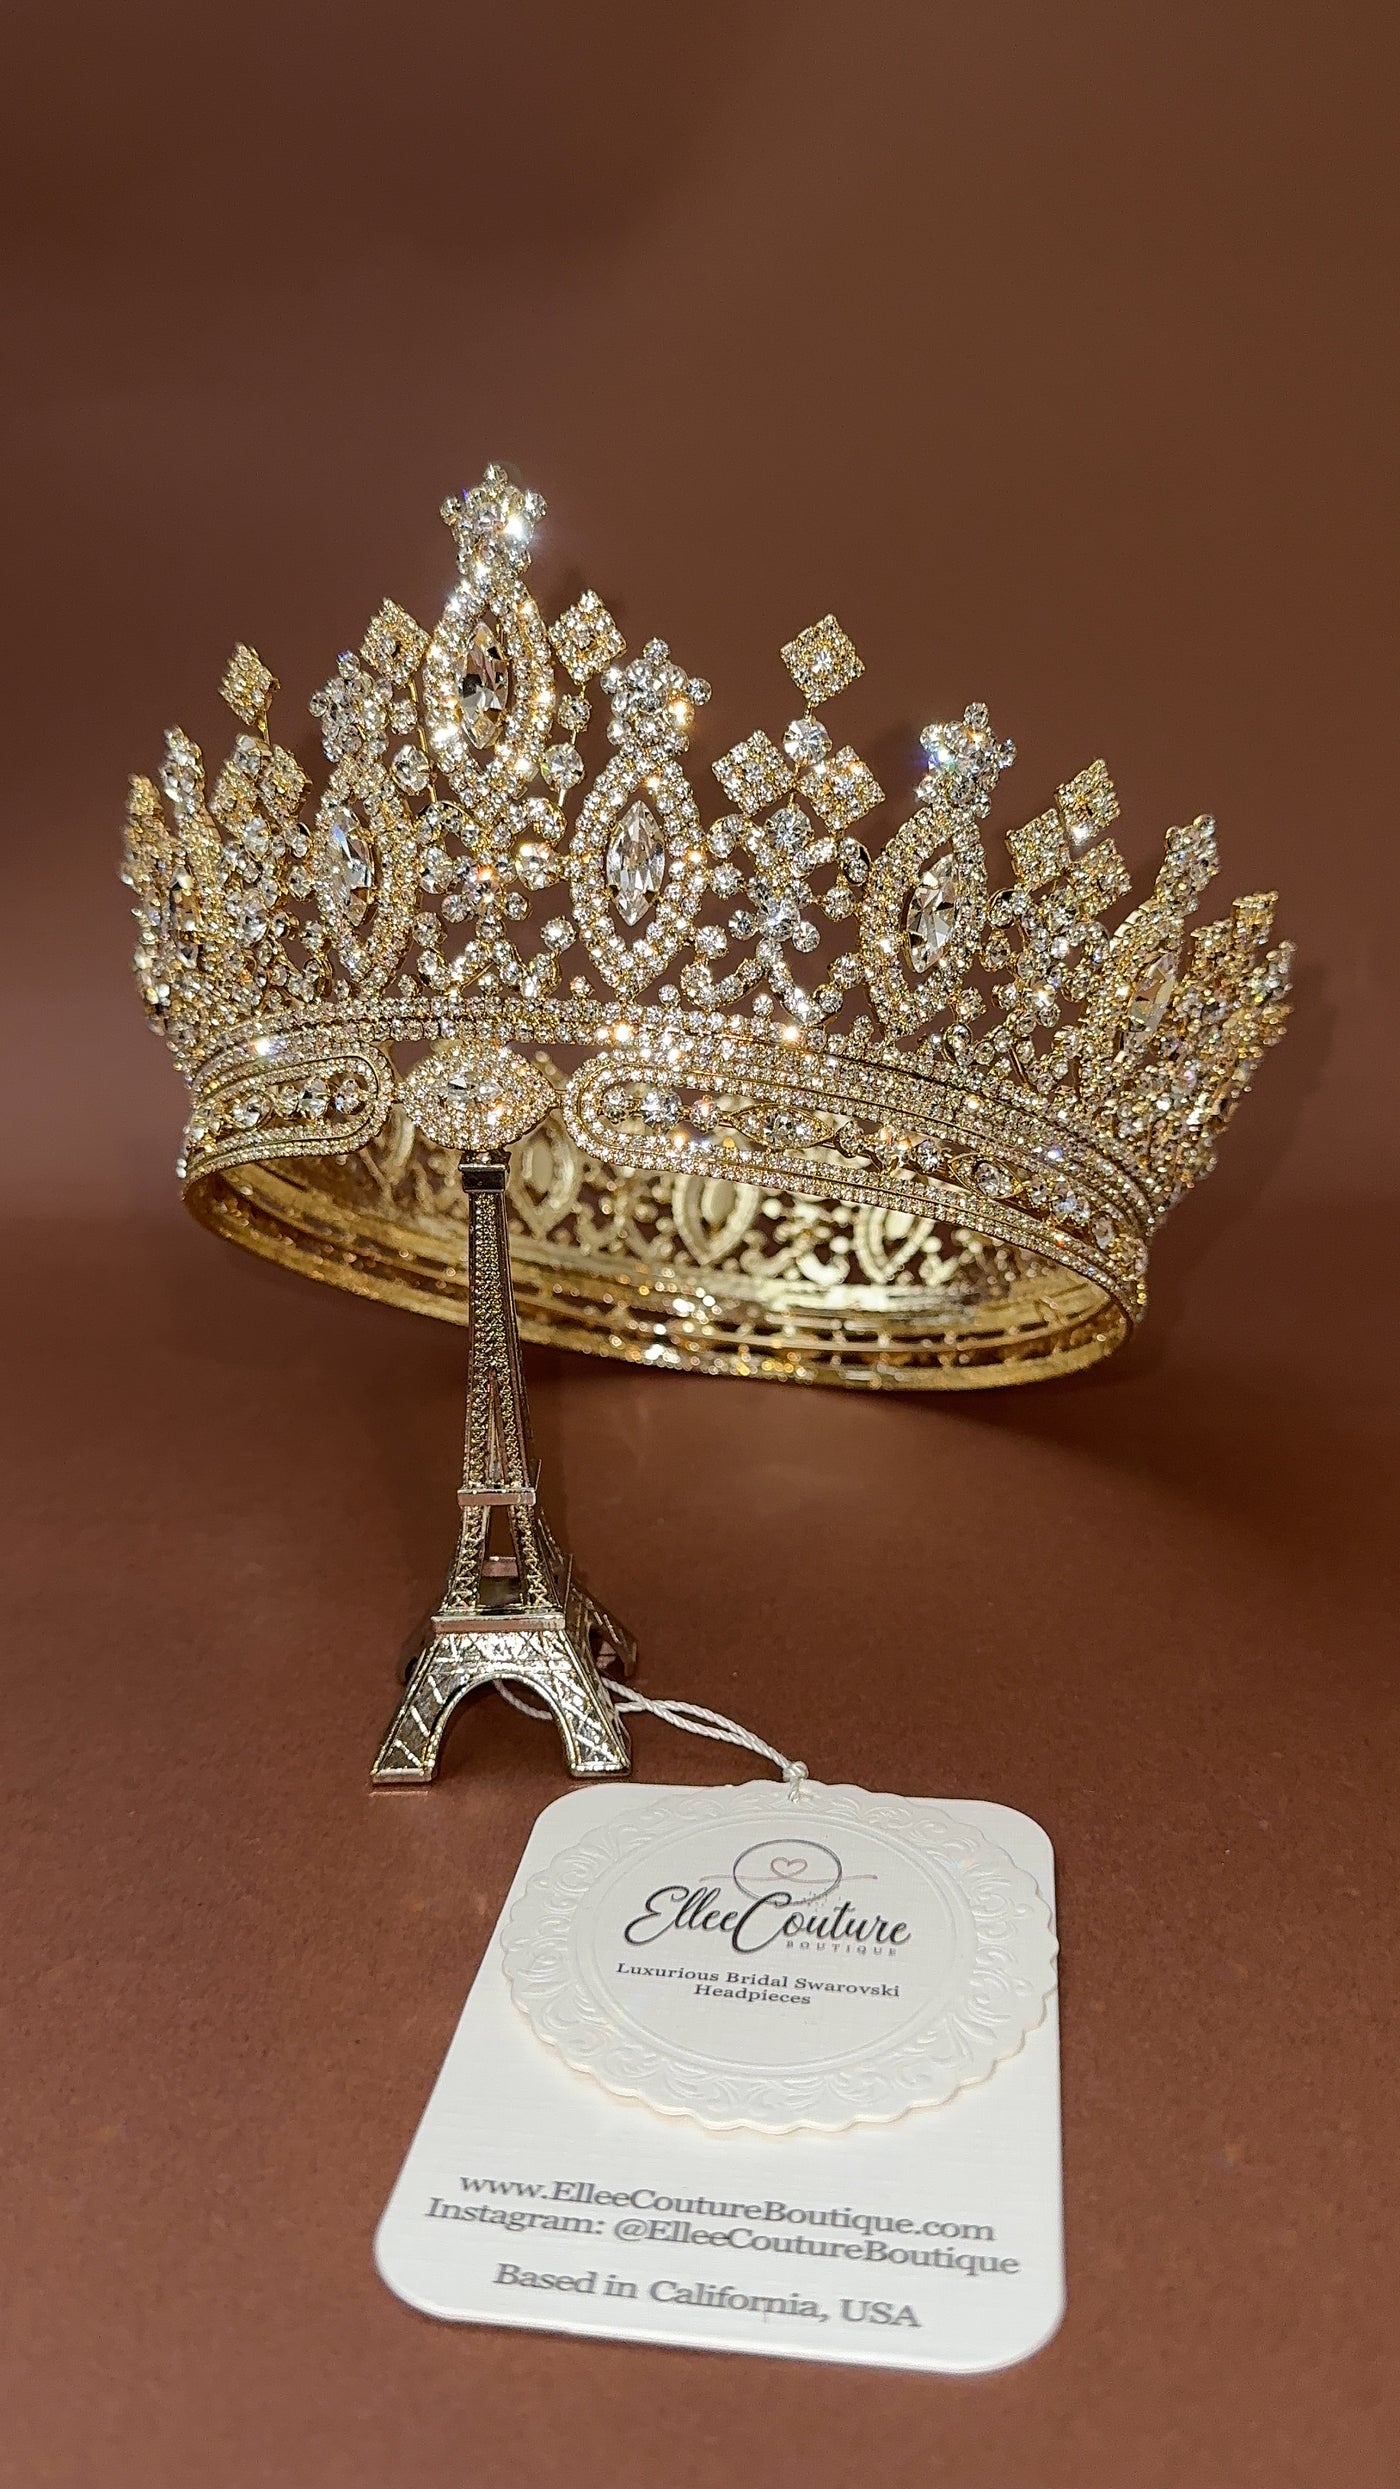 ANASTASIA FULL CROWN Swarovski Gorgeous Bridal or Special Occasion Crown